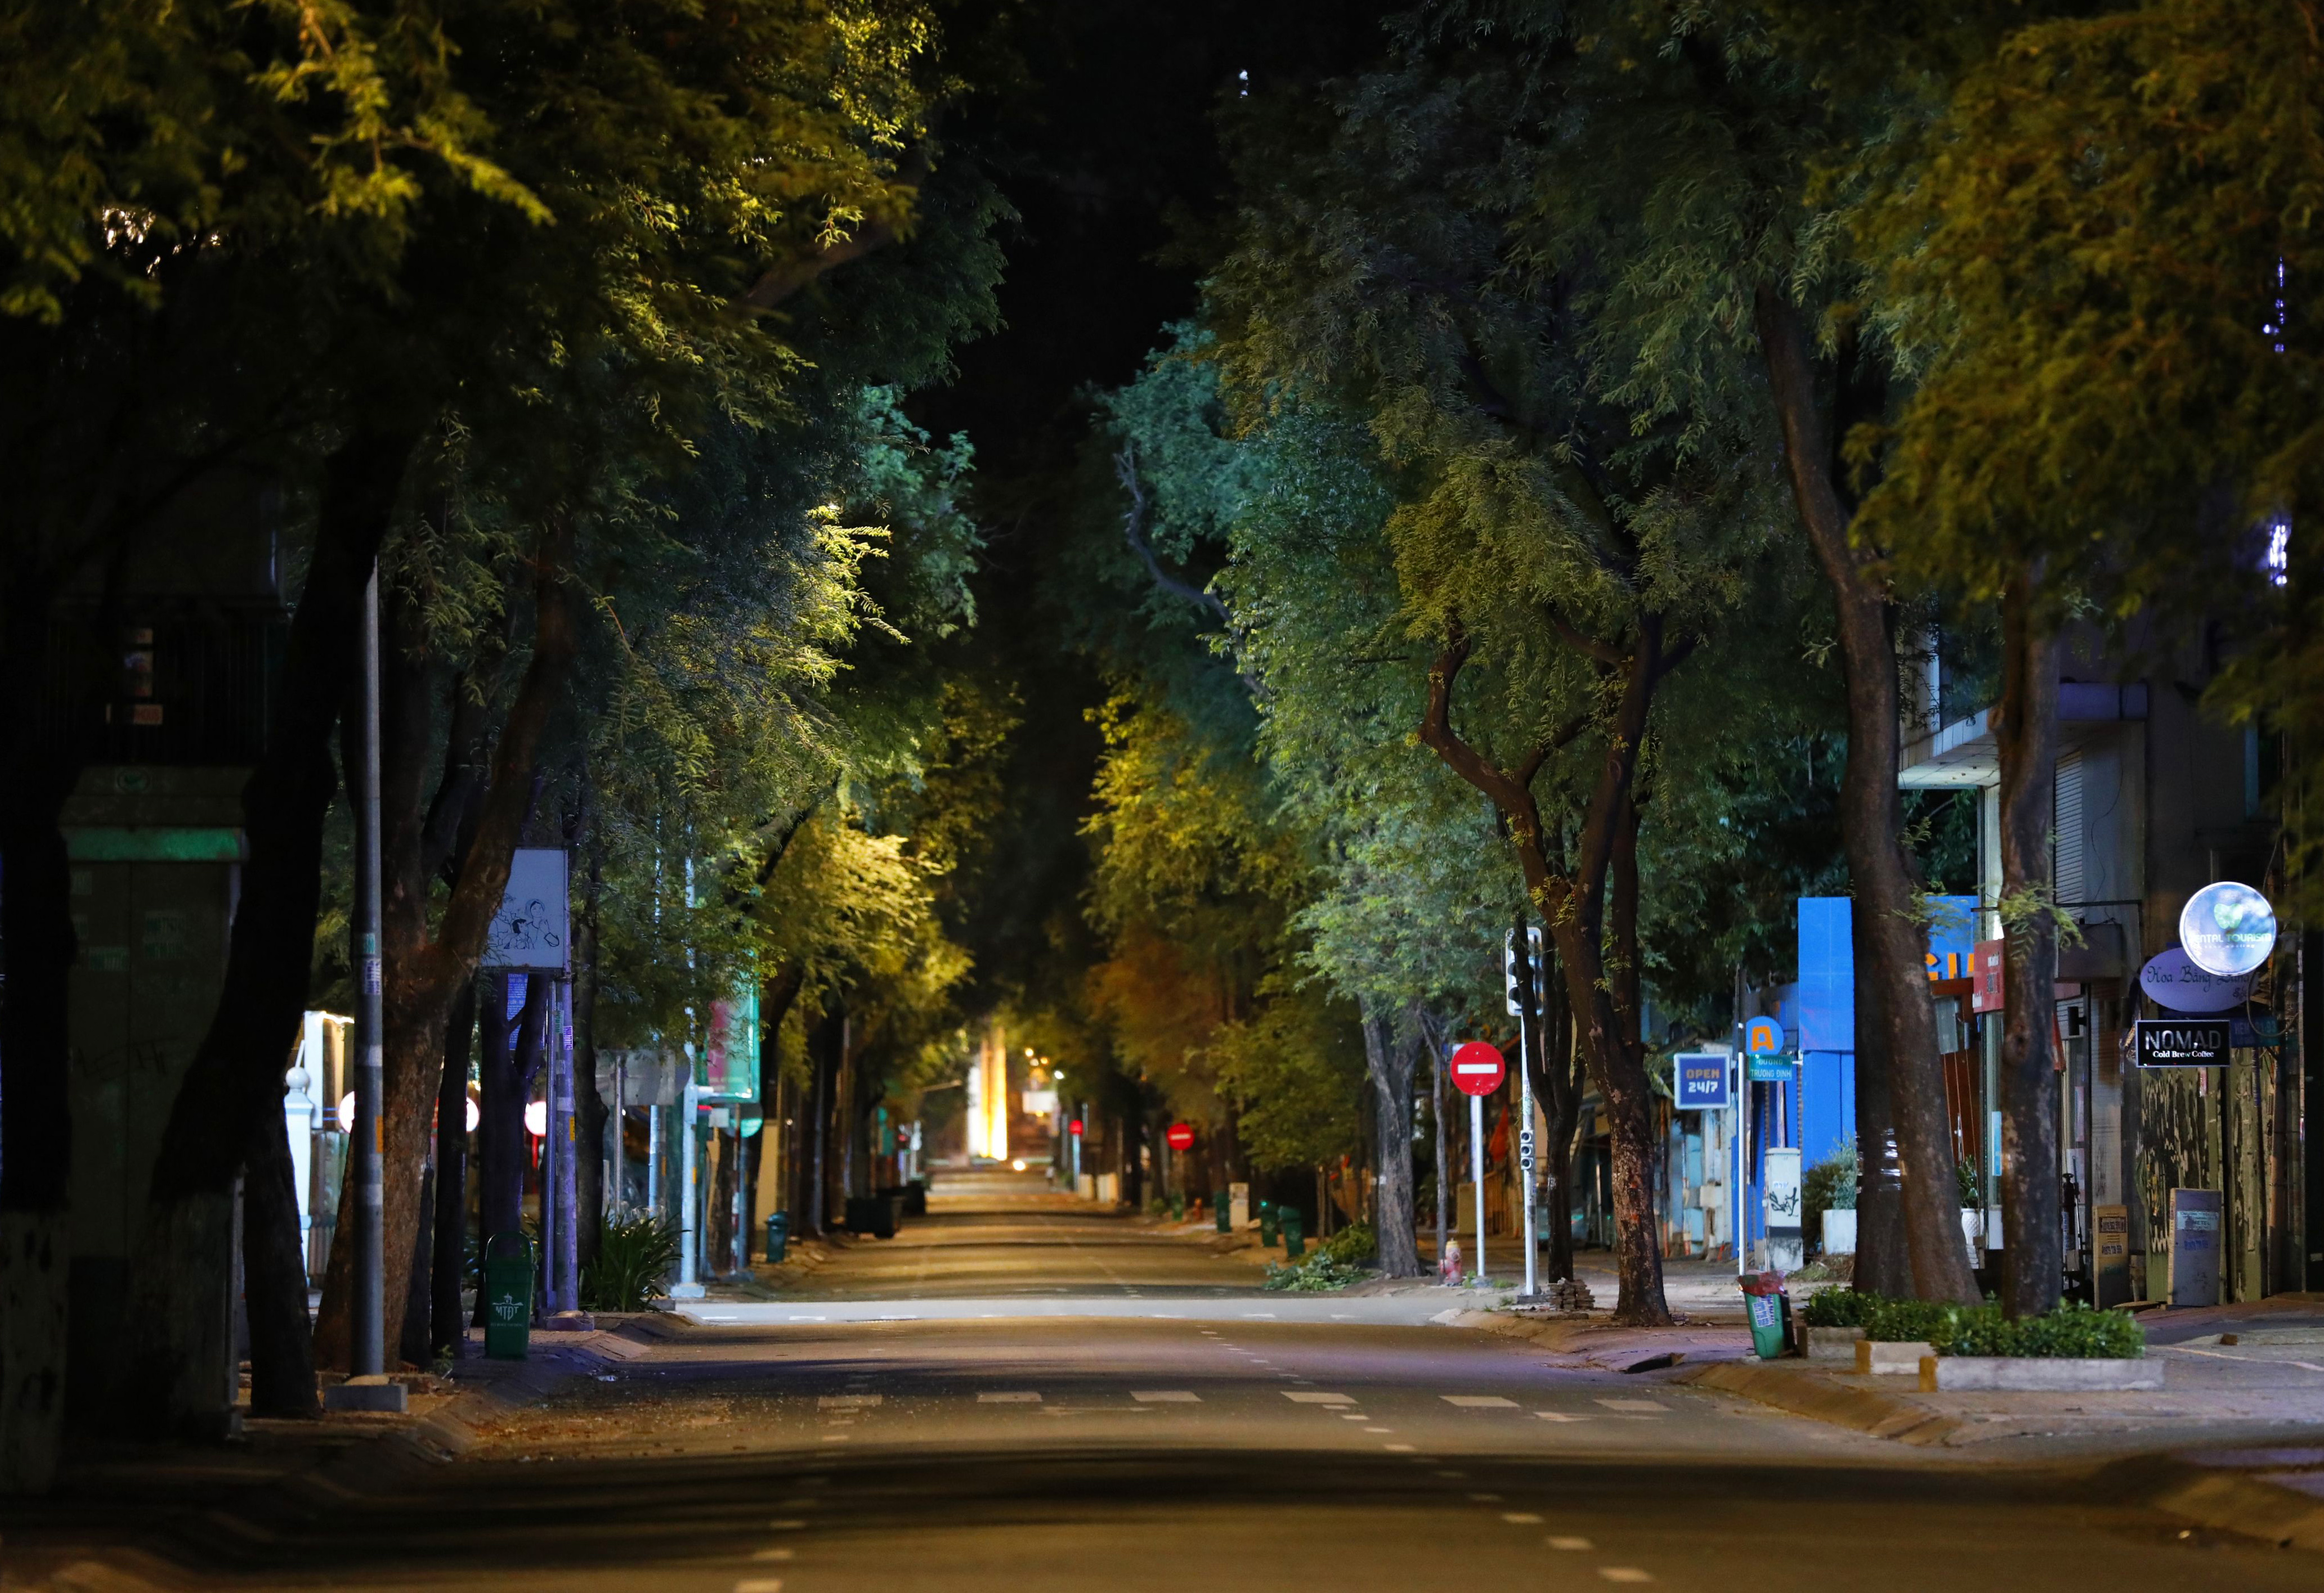 Hình ảnh đường phố ban đêm được chụp vô cùng ấn tượng và bắt mắt, tạo cảm giác như đang bước vào một thế giới khác. Bạn sẽ được trải nghiệm một không gian đầy màu sắc và đầy bất ngờ. Hãy cùng chiêm ngưỡng những khoảnh khắc tuyệt vời này!